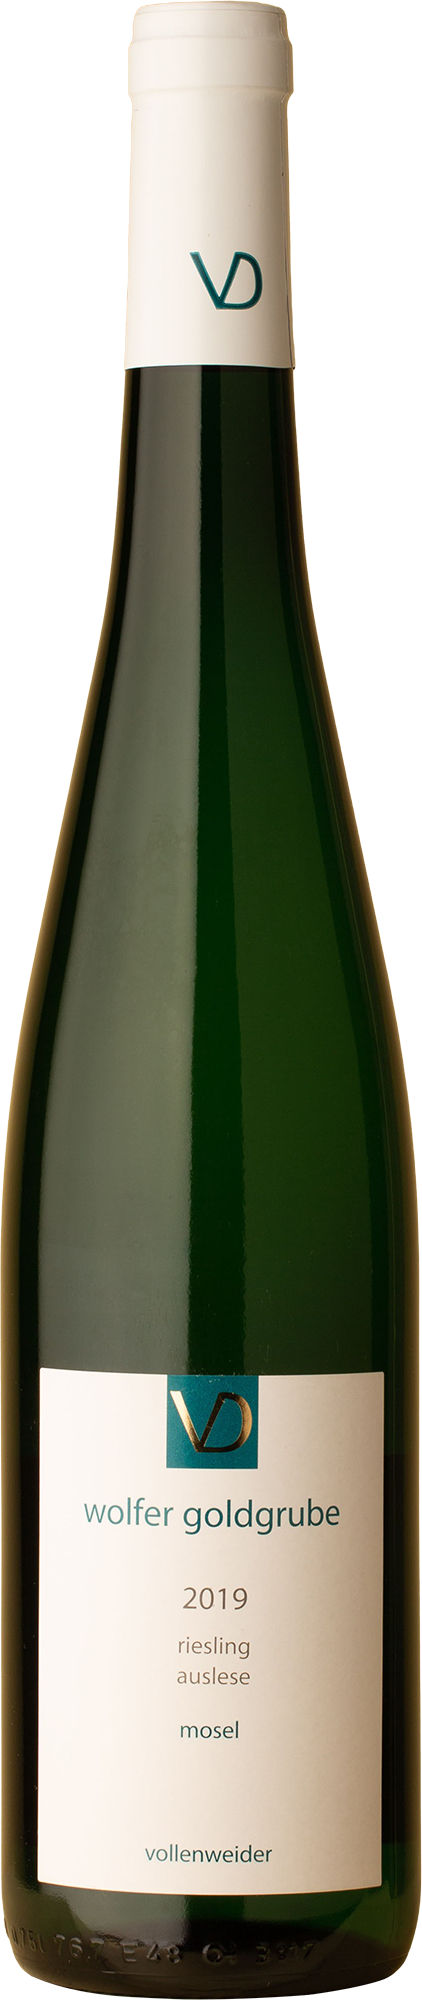 Vollenweider - Wolfer Goldgrube Auslese Riesling 2019 White Wine